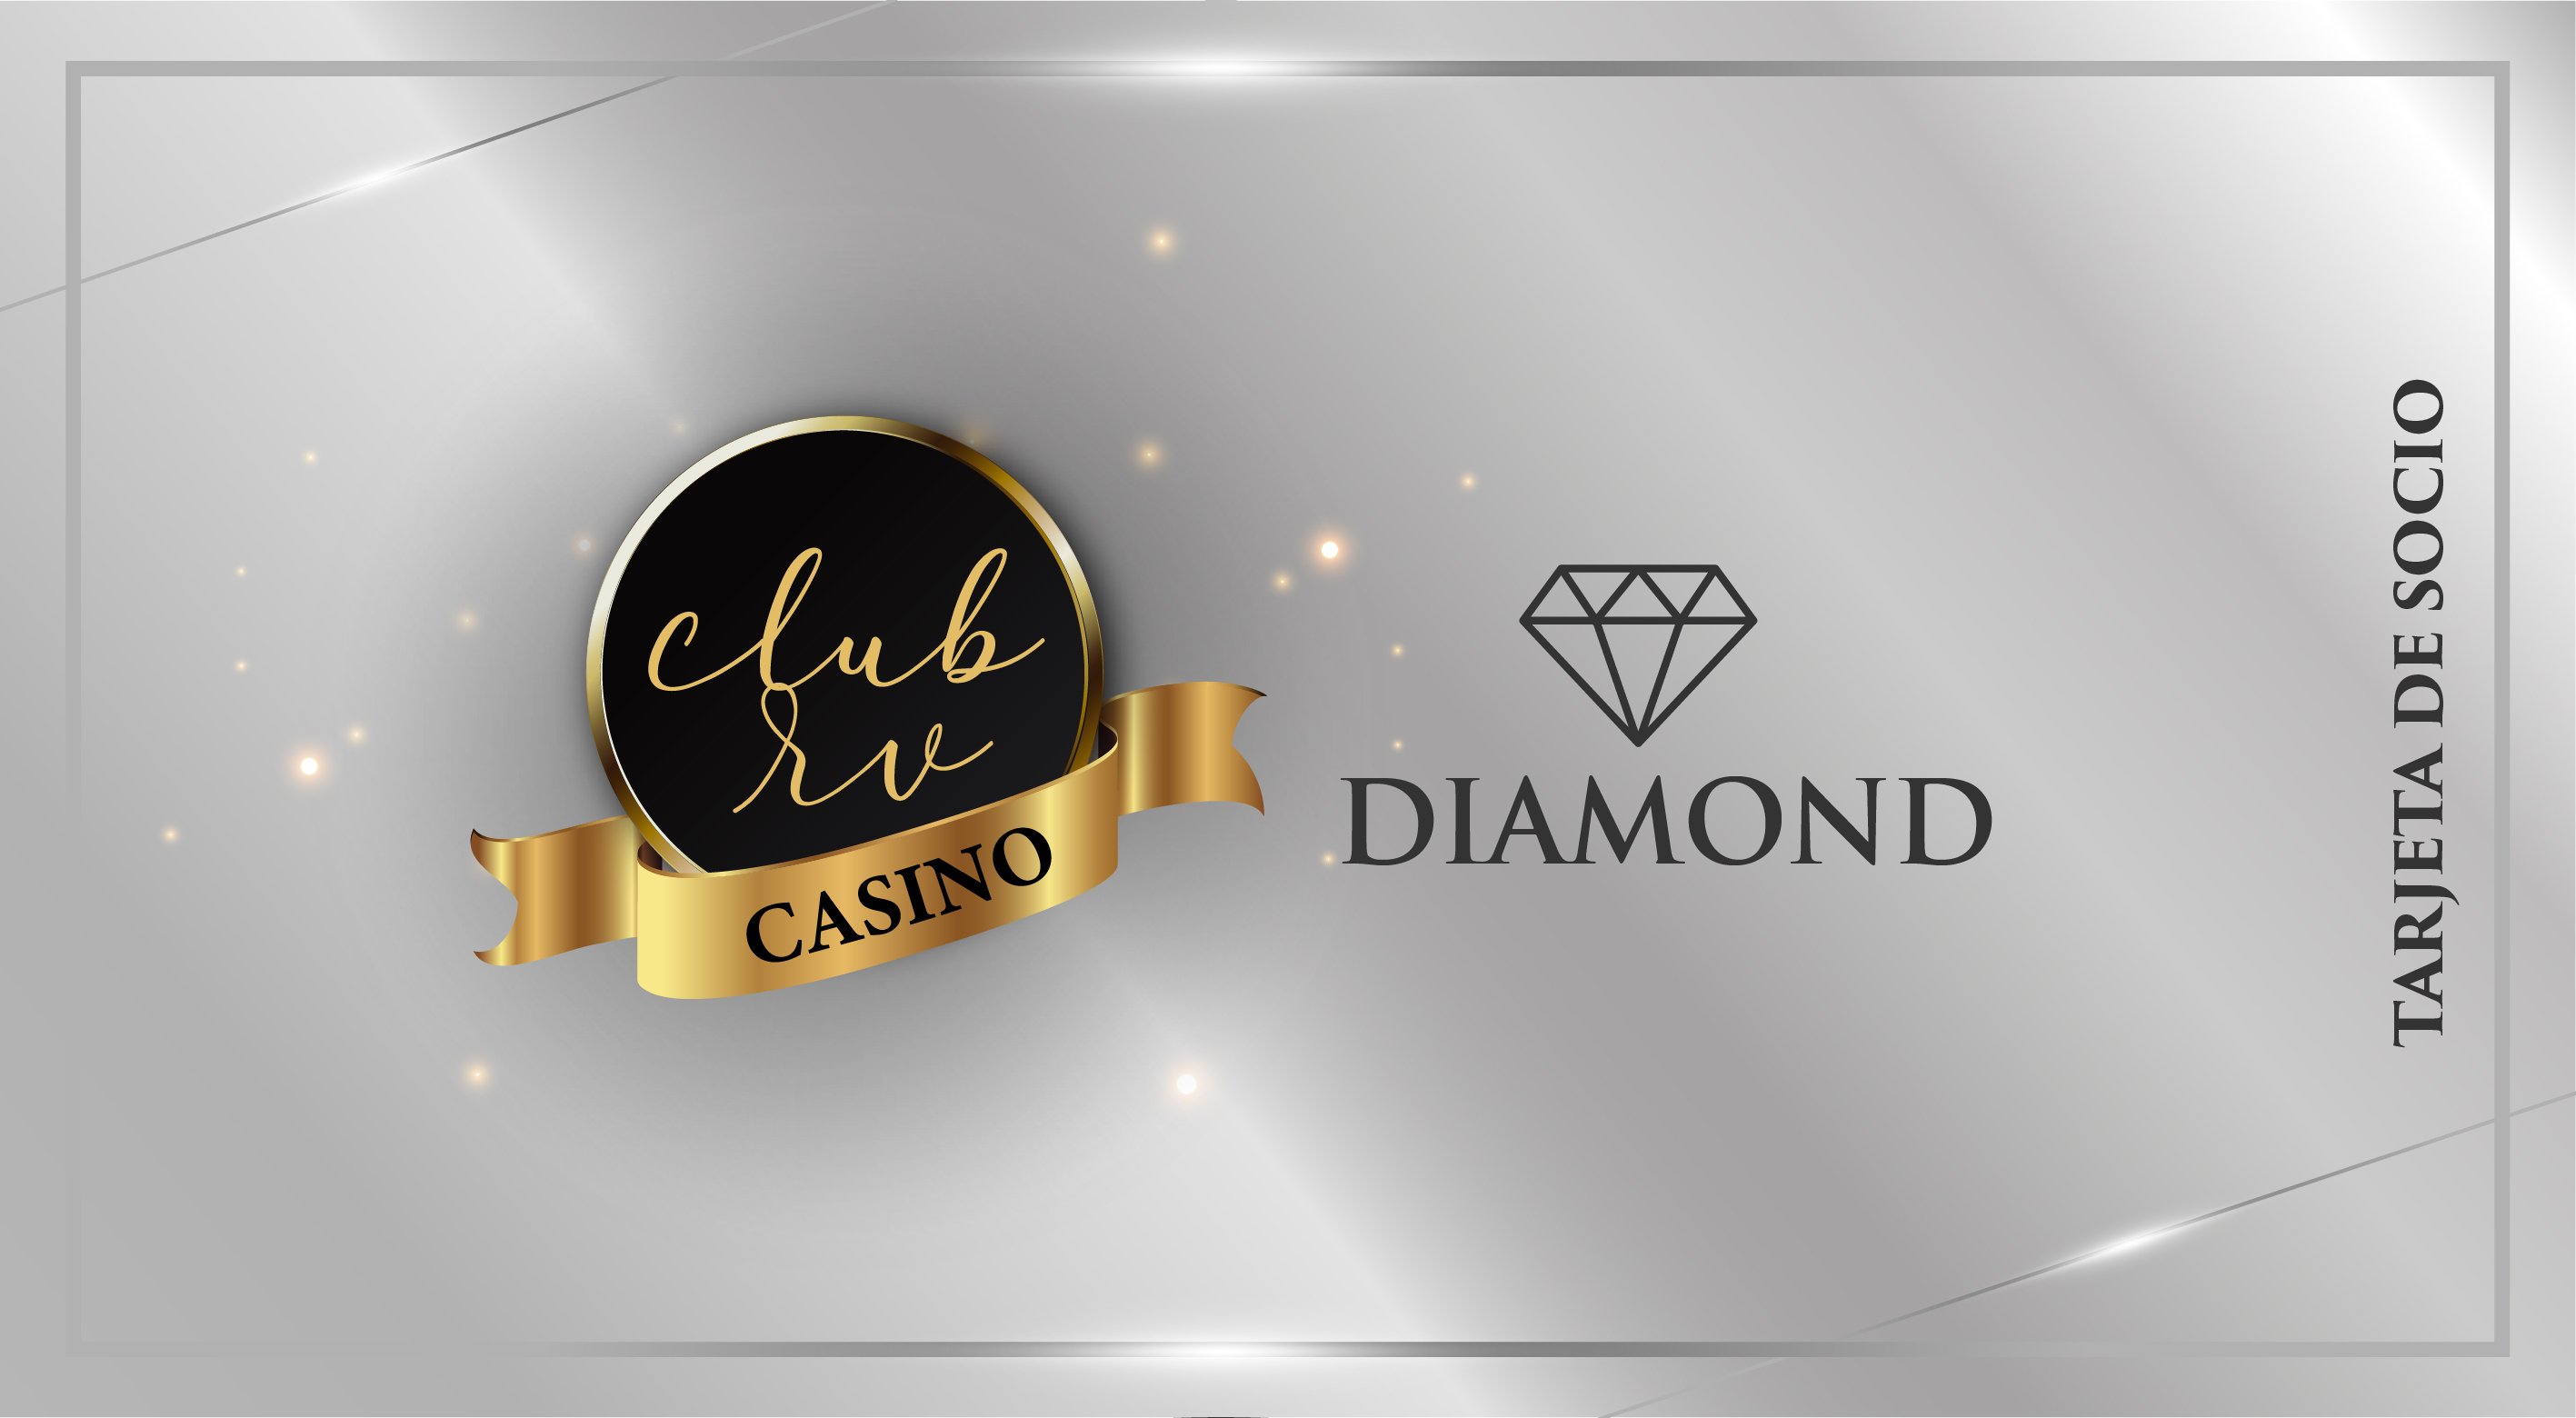 Diamond categoria club rv